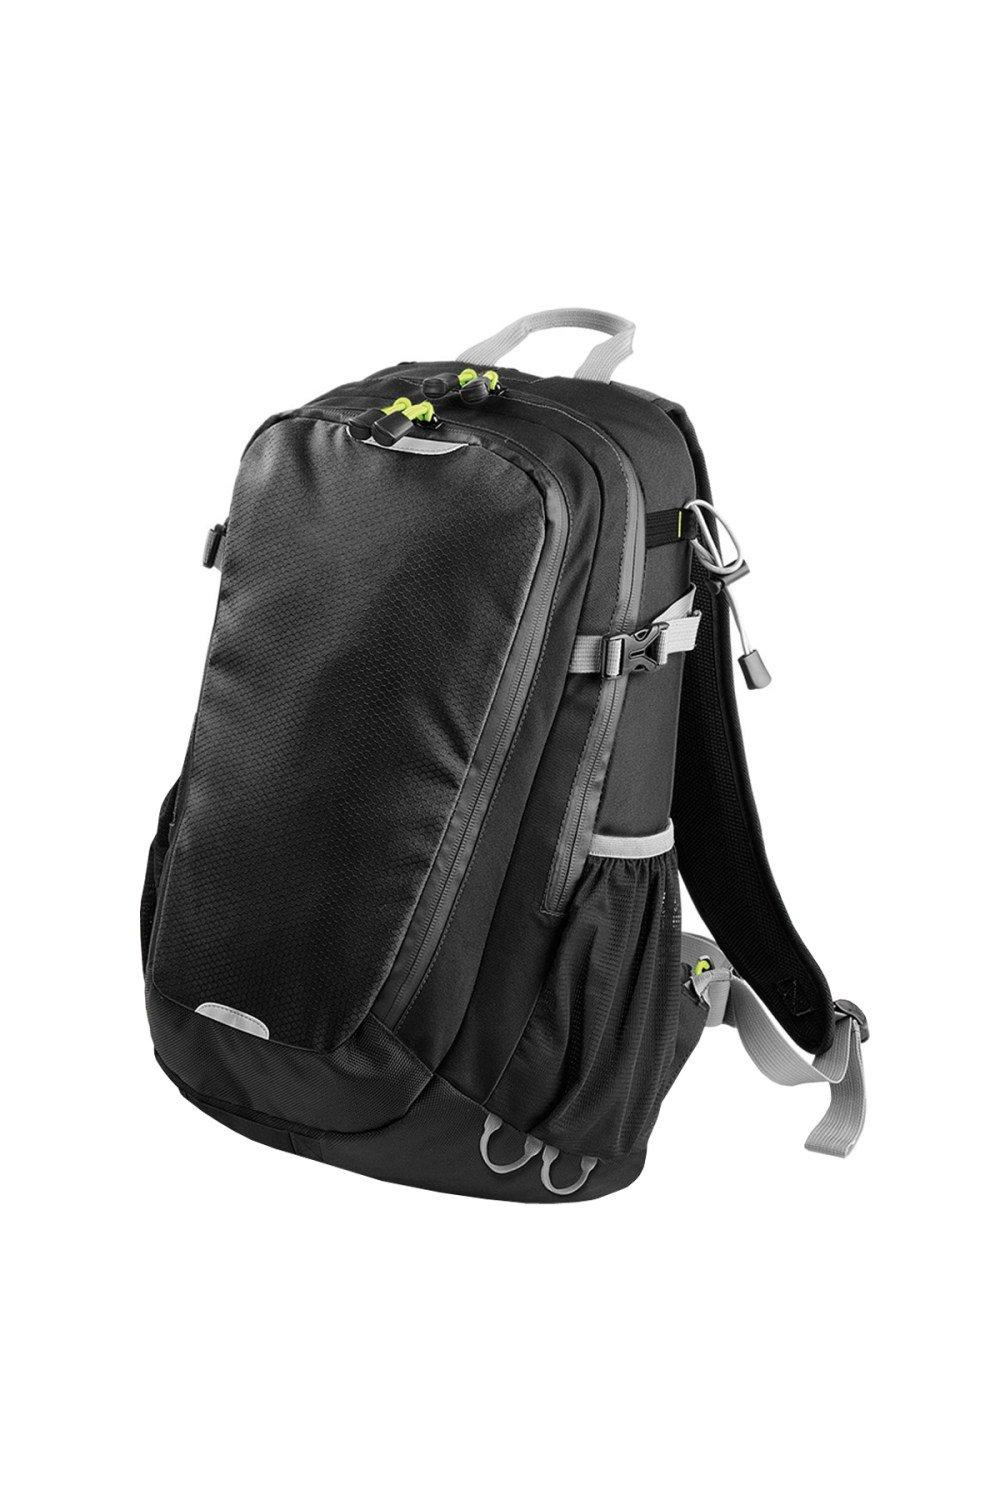 Рюкзак Apex Daypack объемом 20 литров (20 л, ноутбук с диагональю до 15,6 дюйма) Quadra, черный чехол mypads ламборгини мужской для oukitel wp16 задняя панель накладка бампер